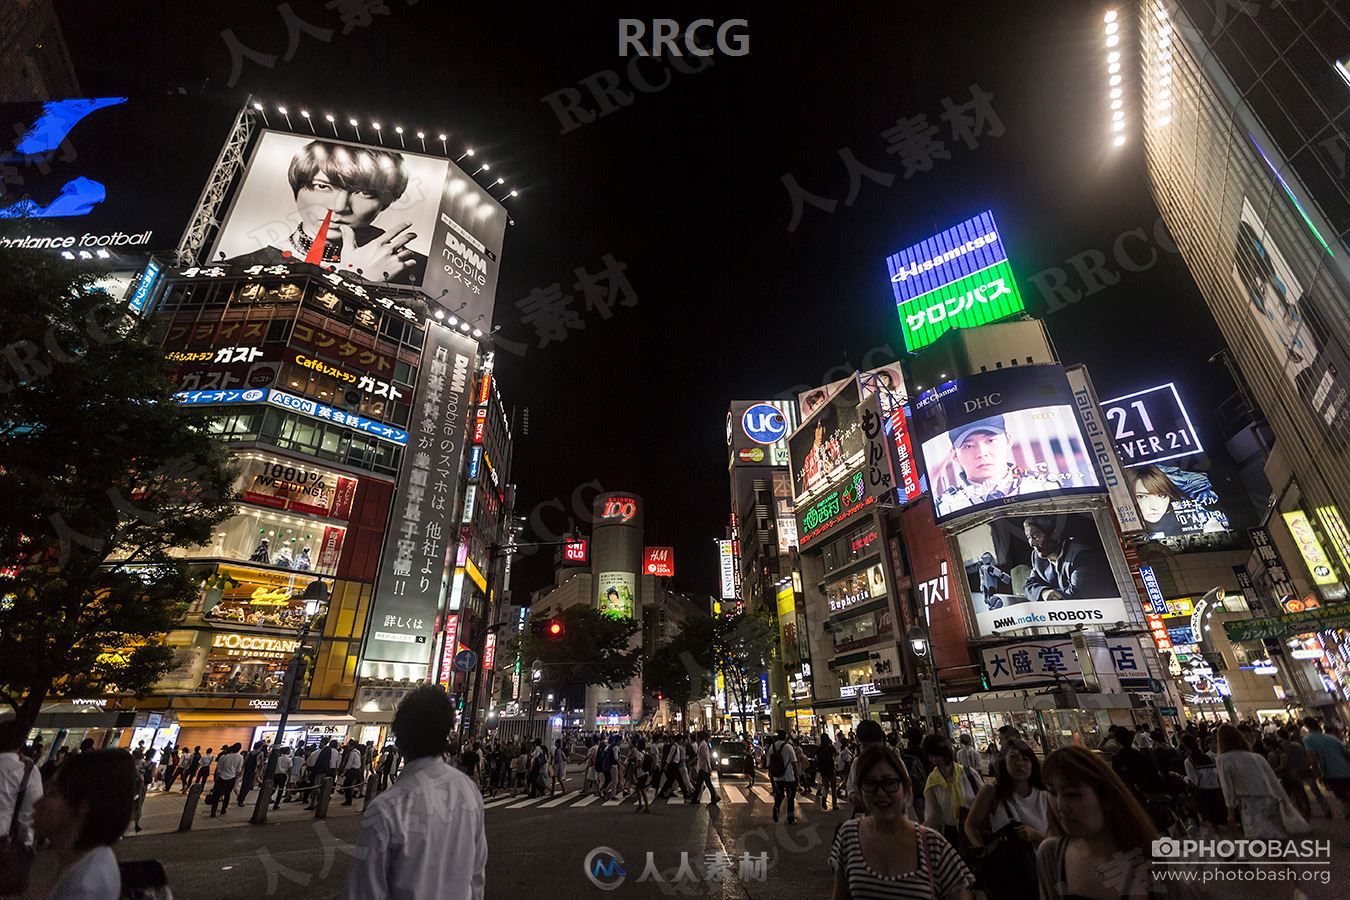 690组博赛朋克东京城市建筑街拍高清参考图片合集第二季